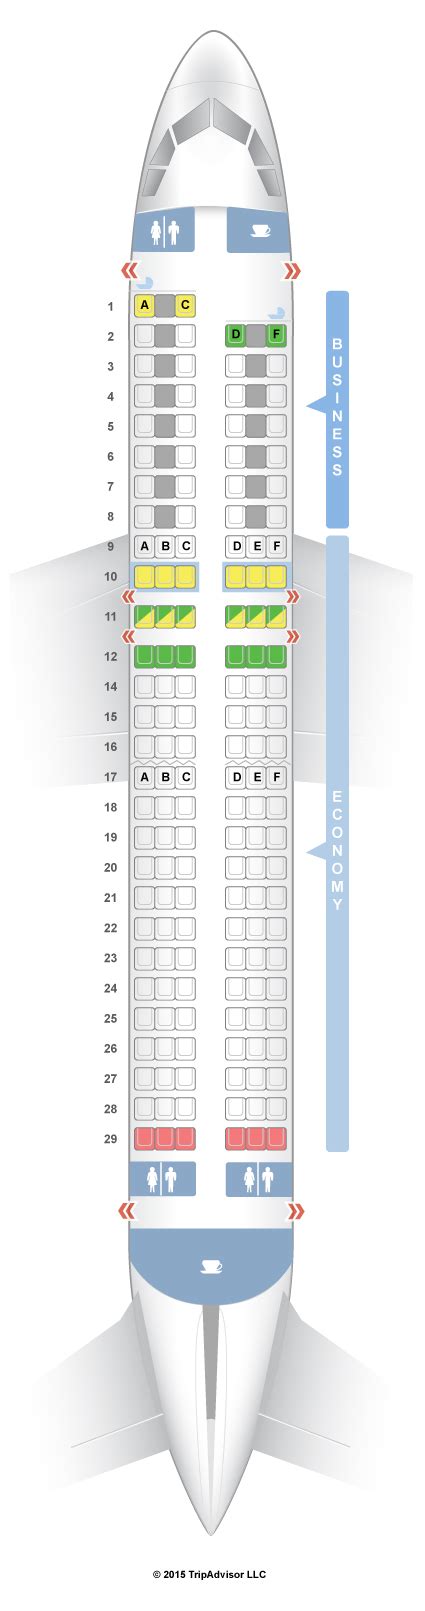 Seatguru Seat Map Air France Airbus A320 320 Europe